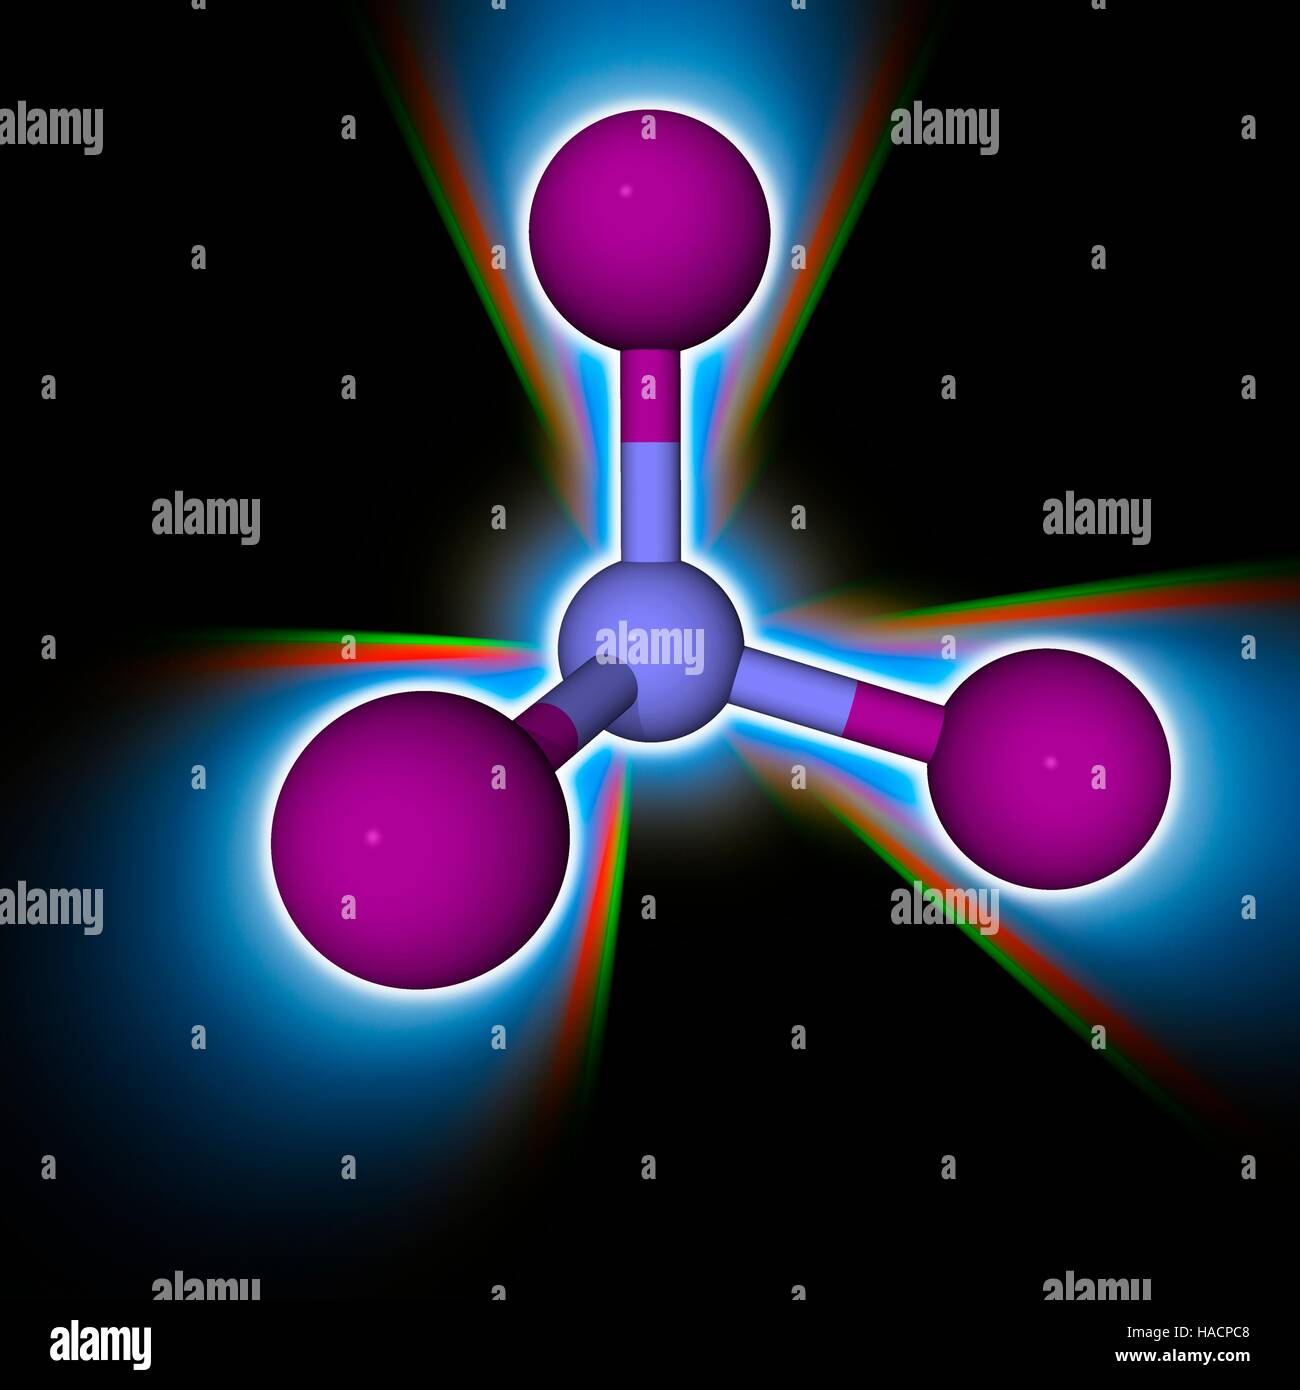 Triyoduro de nitrógeno. Modelo molecular del explosivo químico triyoduro de nitrógeno (N.I3). Este explosivo es extremadamente sensible a las perturbaciones. Los átomos son representados como esferas y están codificados por color: nitrógeno (azul) y el yodo (violeta). Ilustración. Foto de stock